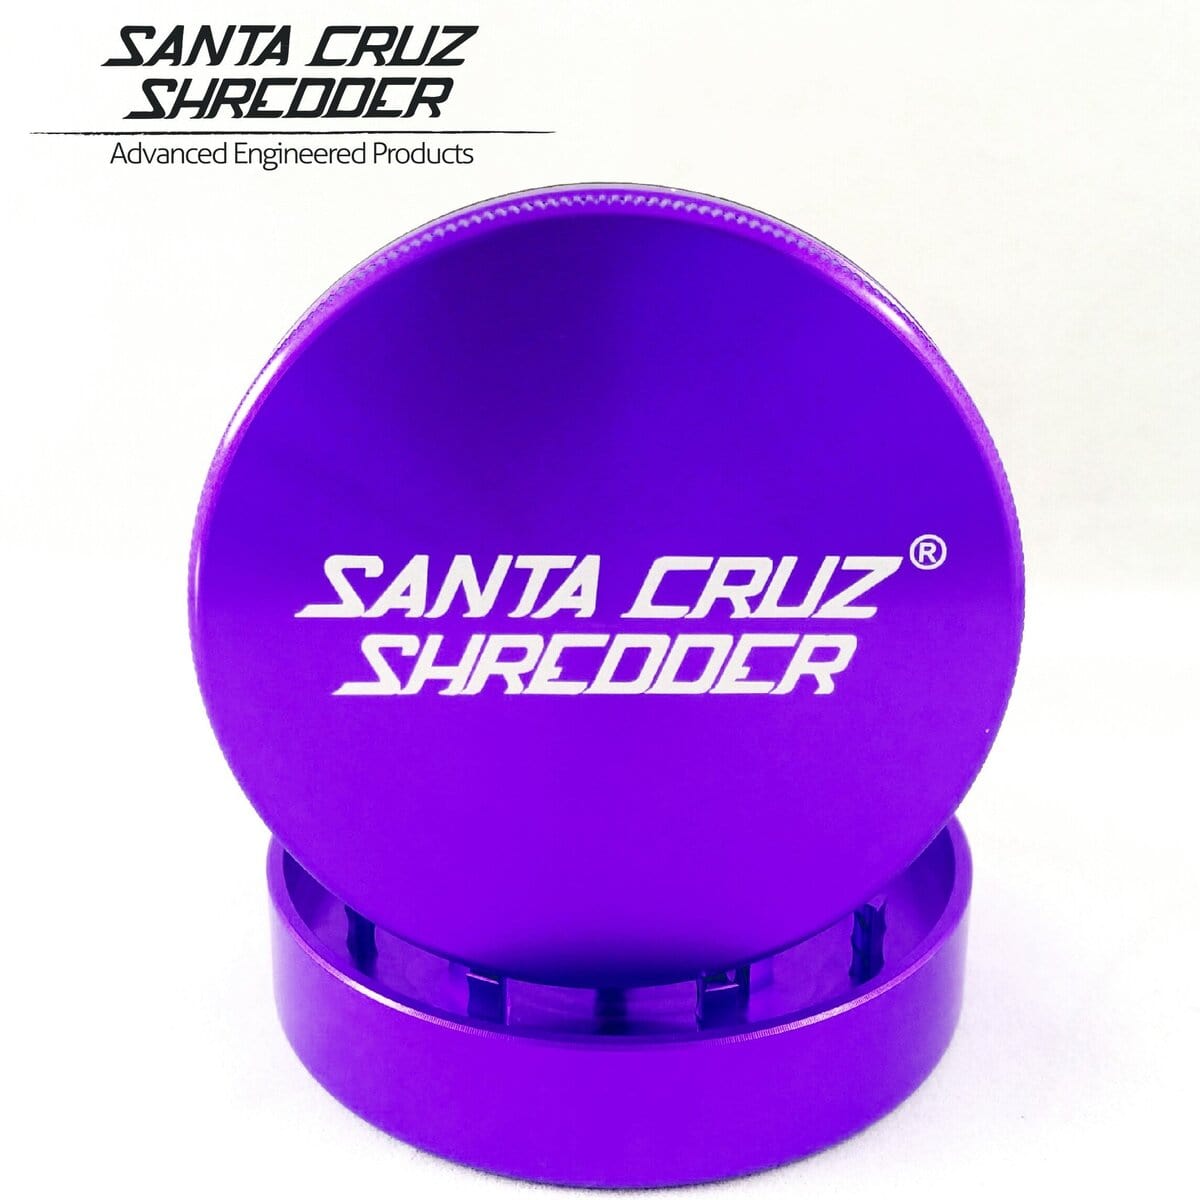 Santa Cruz Shredder Grinder Purple Santa Cruz Shredder 2 Piece Medium Grinder